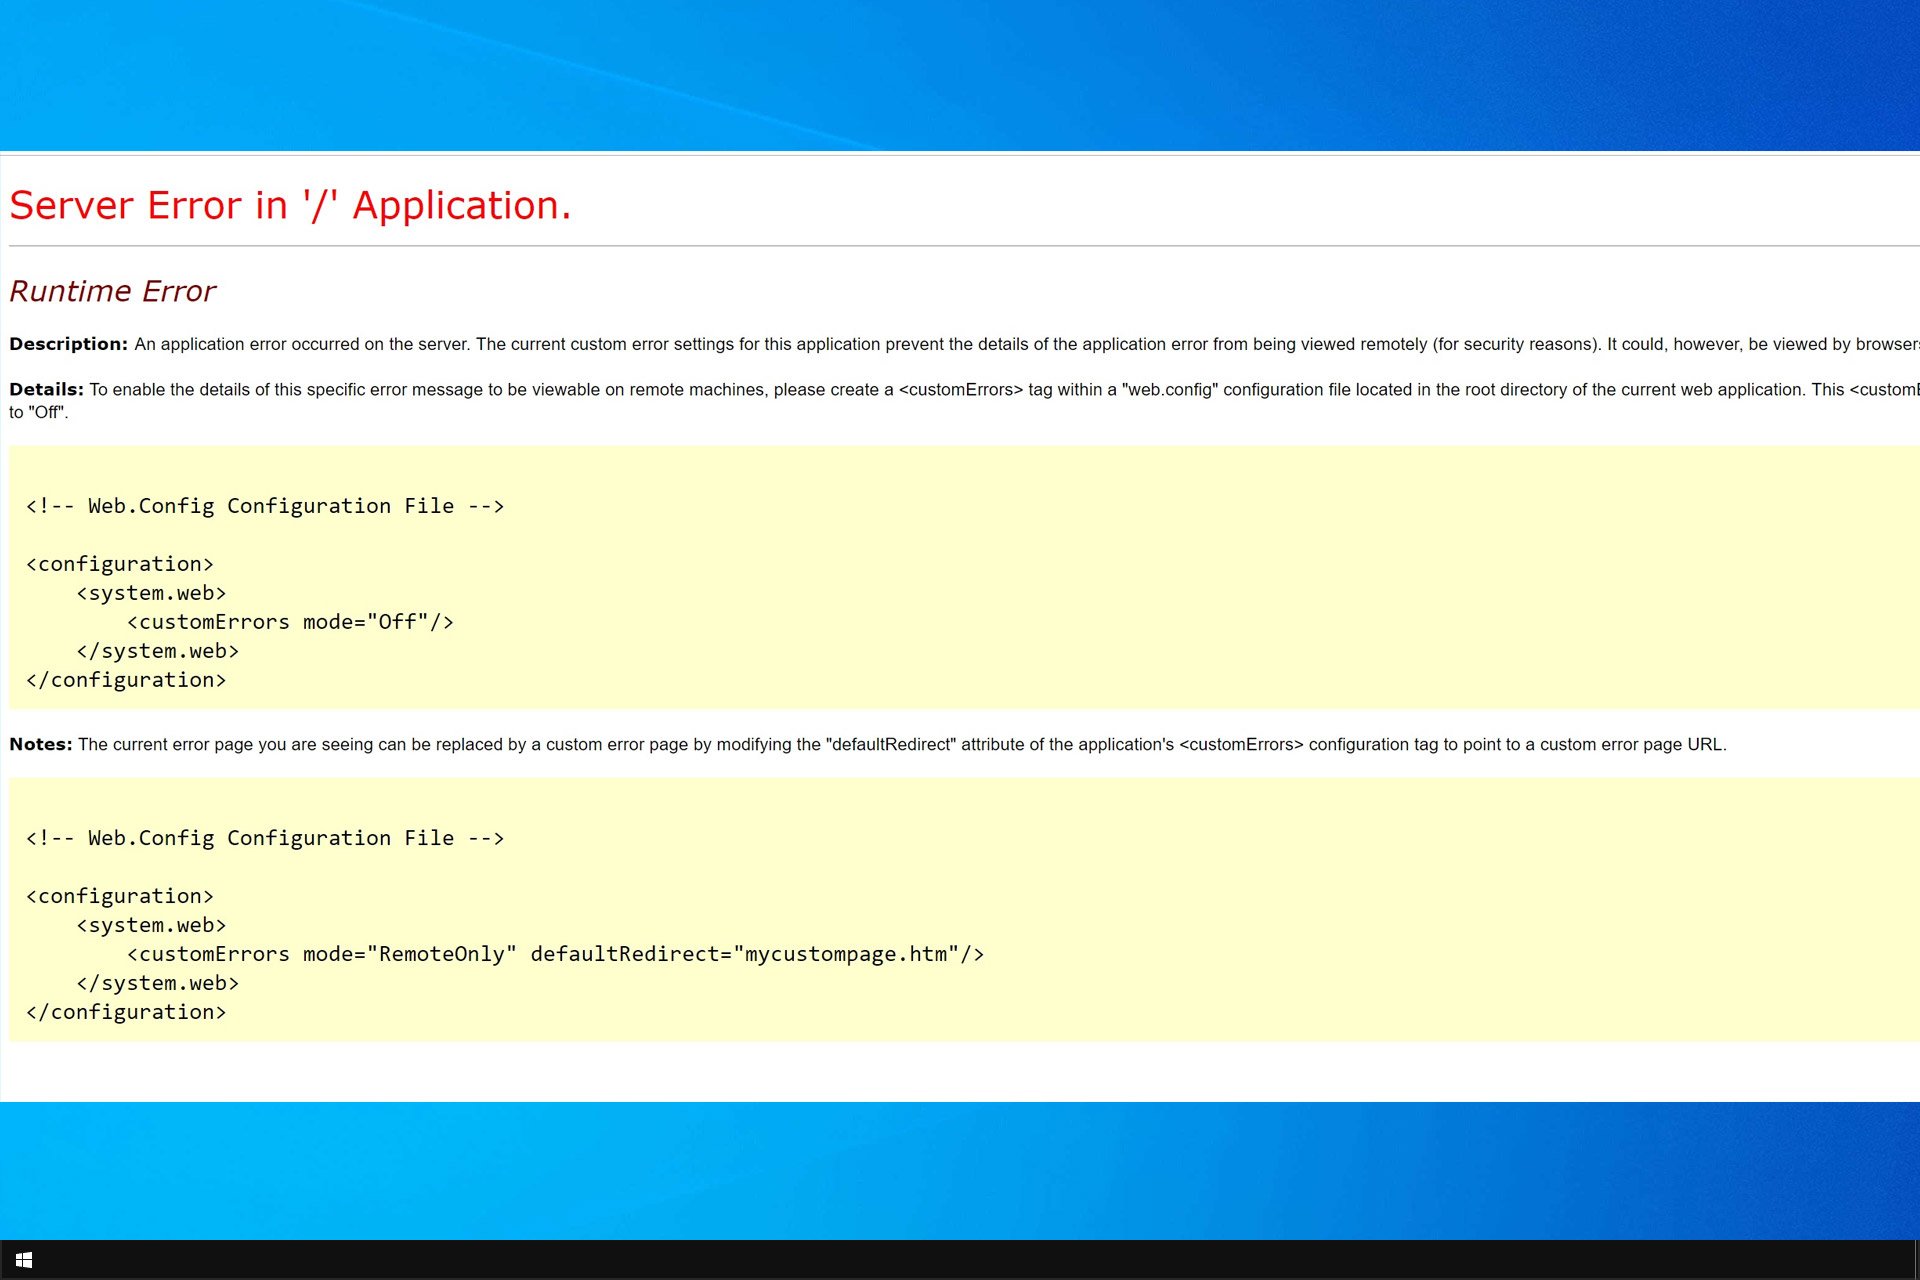 Server Error In Application Runtime Error Description An Application